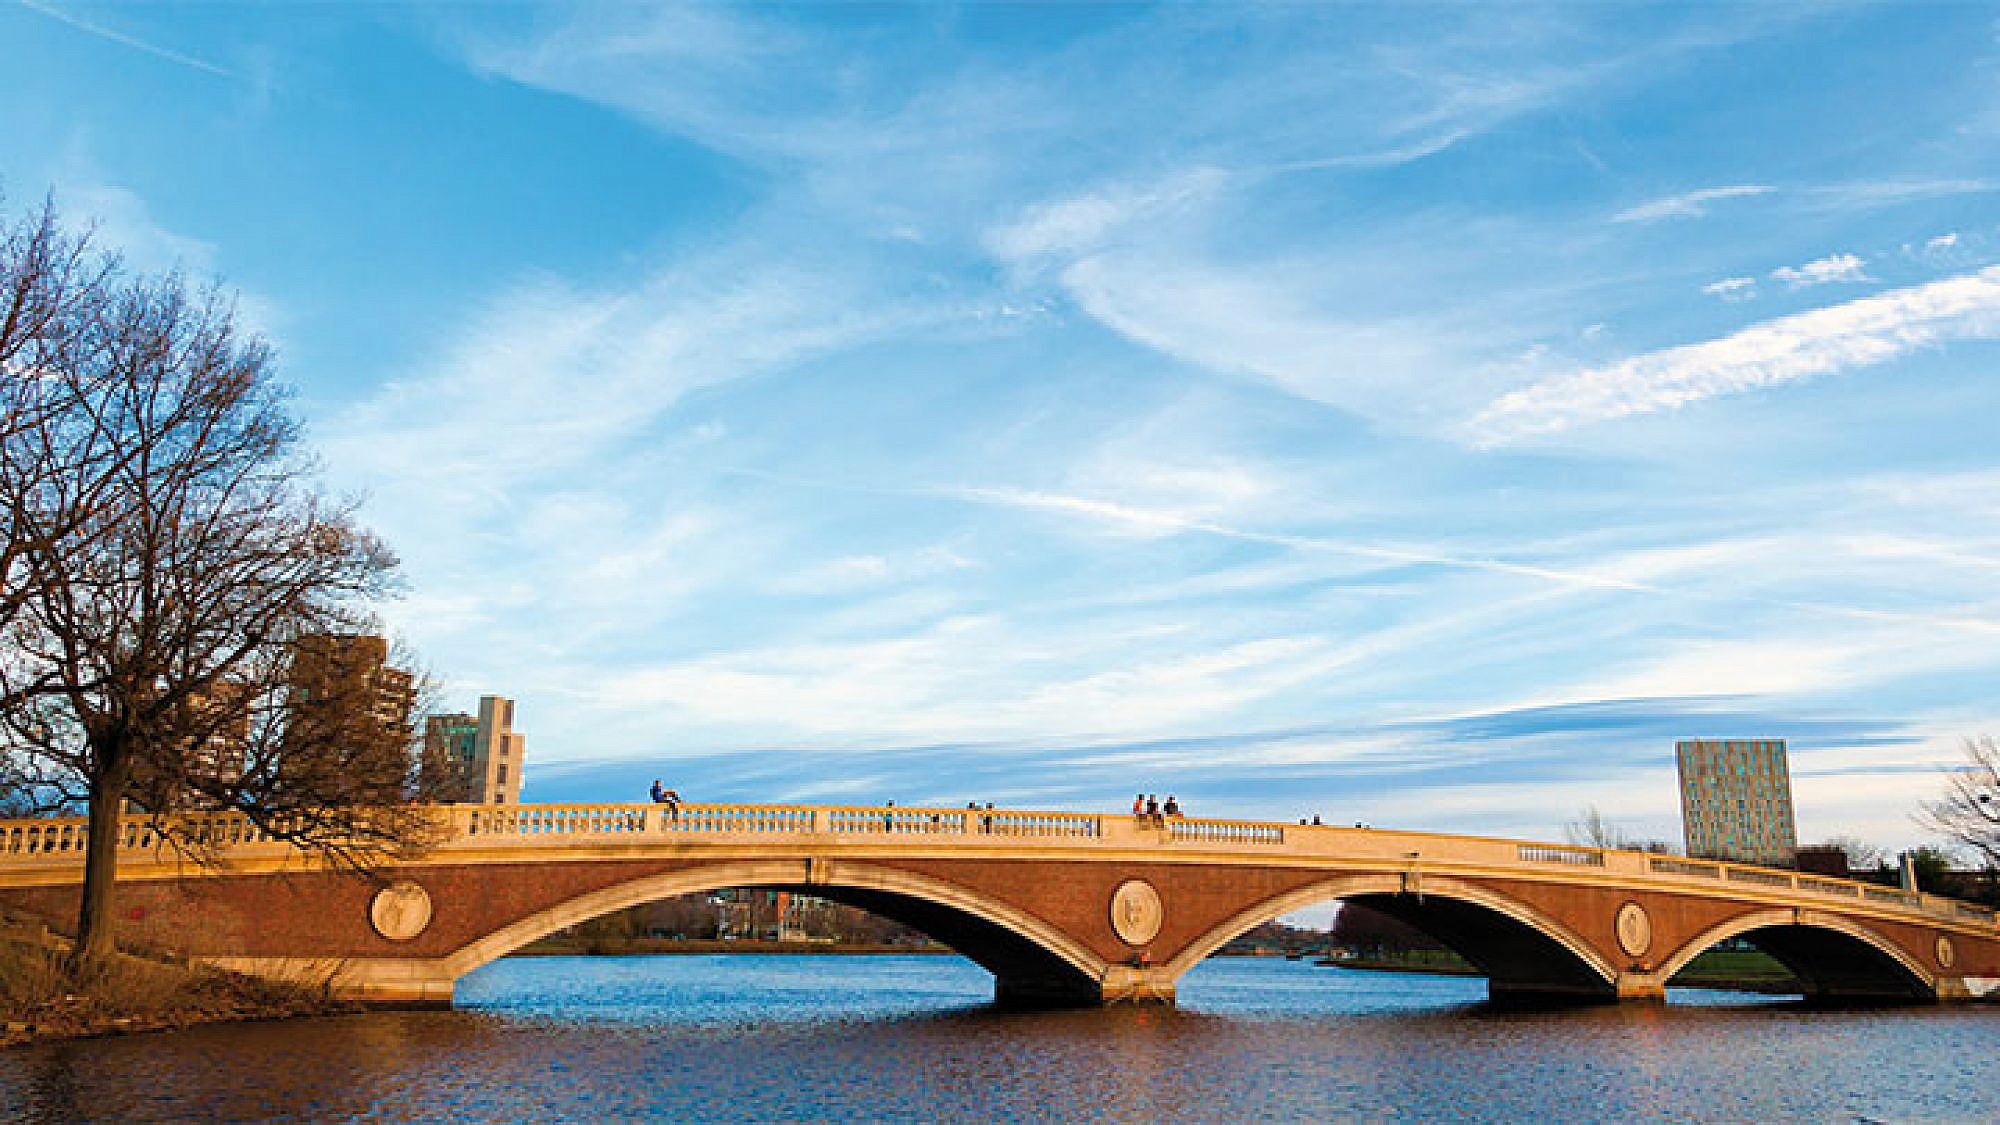 בוסטון, שפע אטרקציות | צילום: Shutterstock